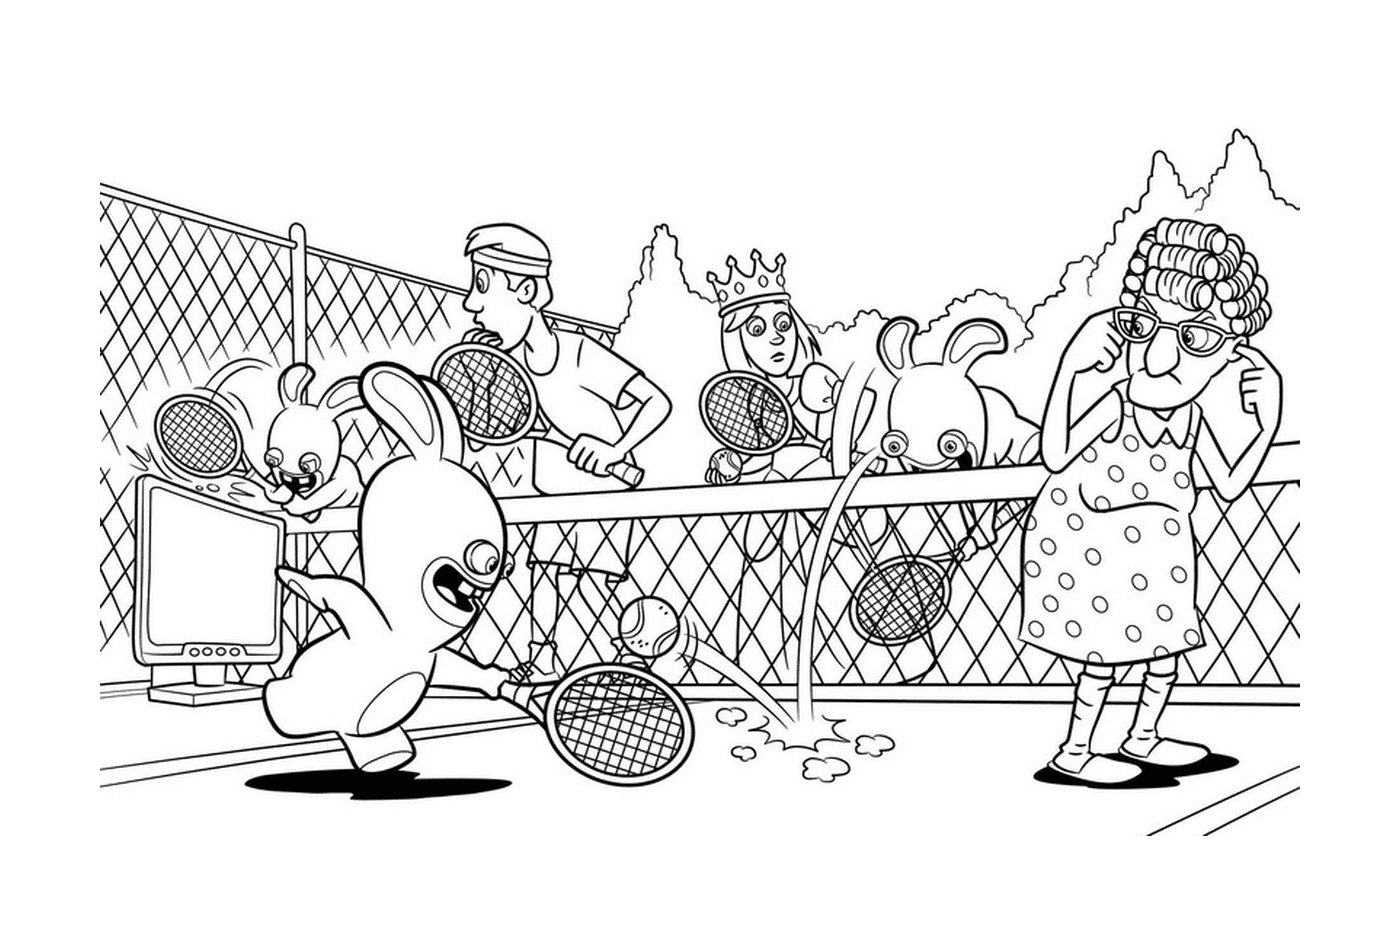  Kaninchen Cretins spielen Tennis 